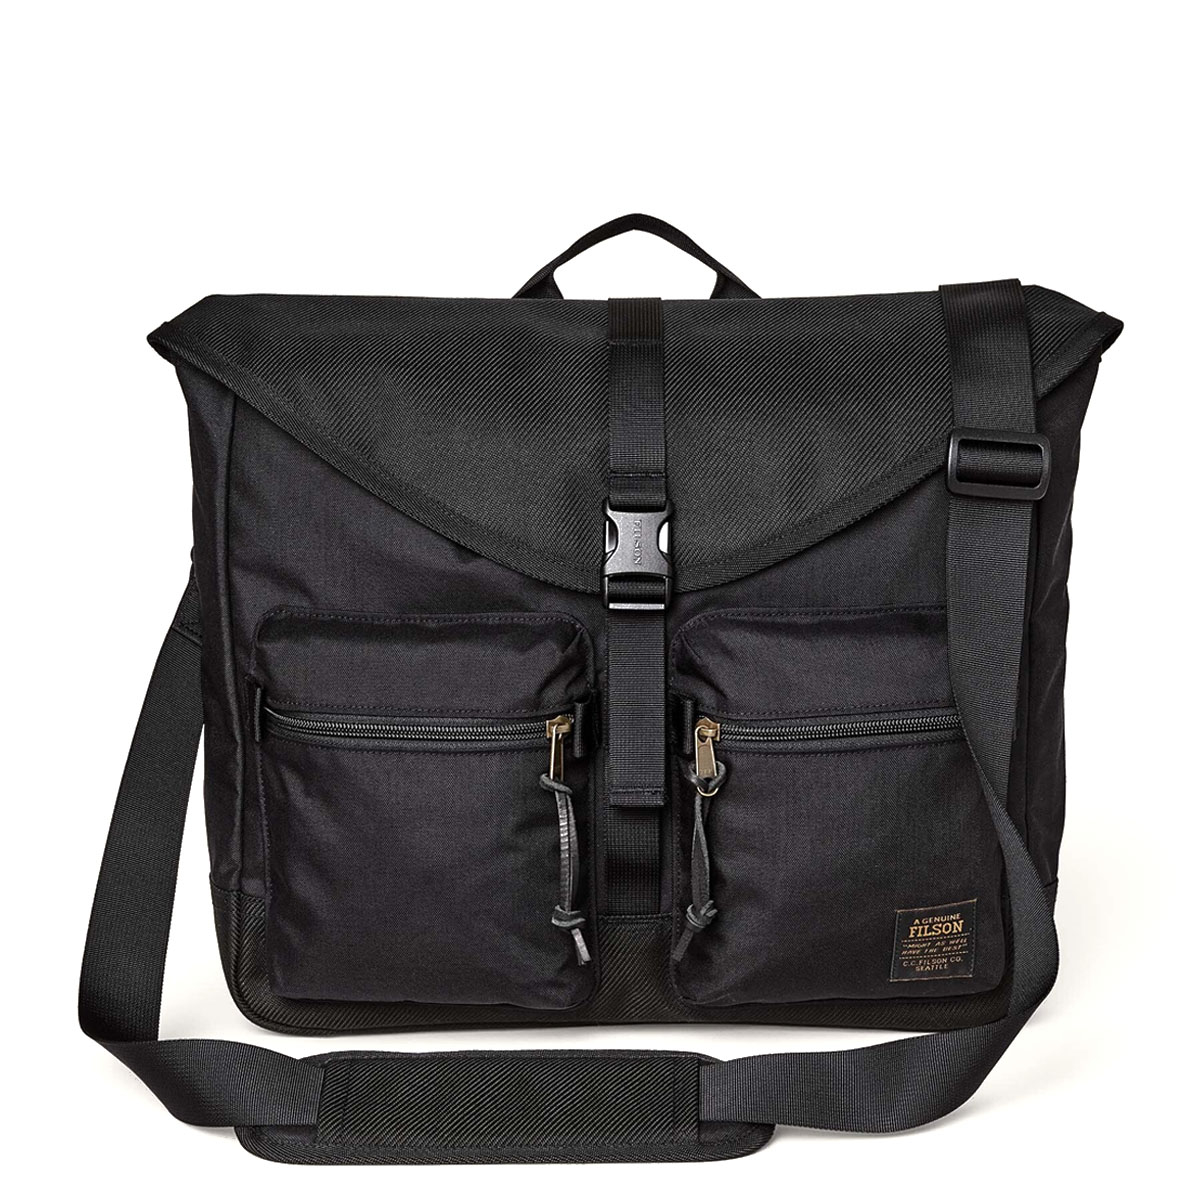 Filson Surveyor Messenger Bag Black, duurzame en veelzijdige messenger bag die bestand is tegen intensief gebruik